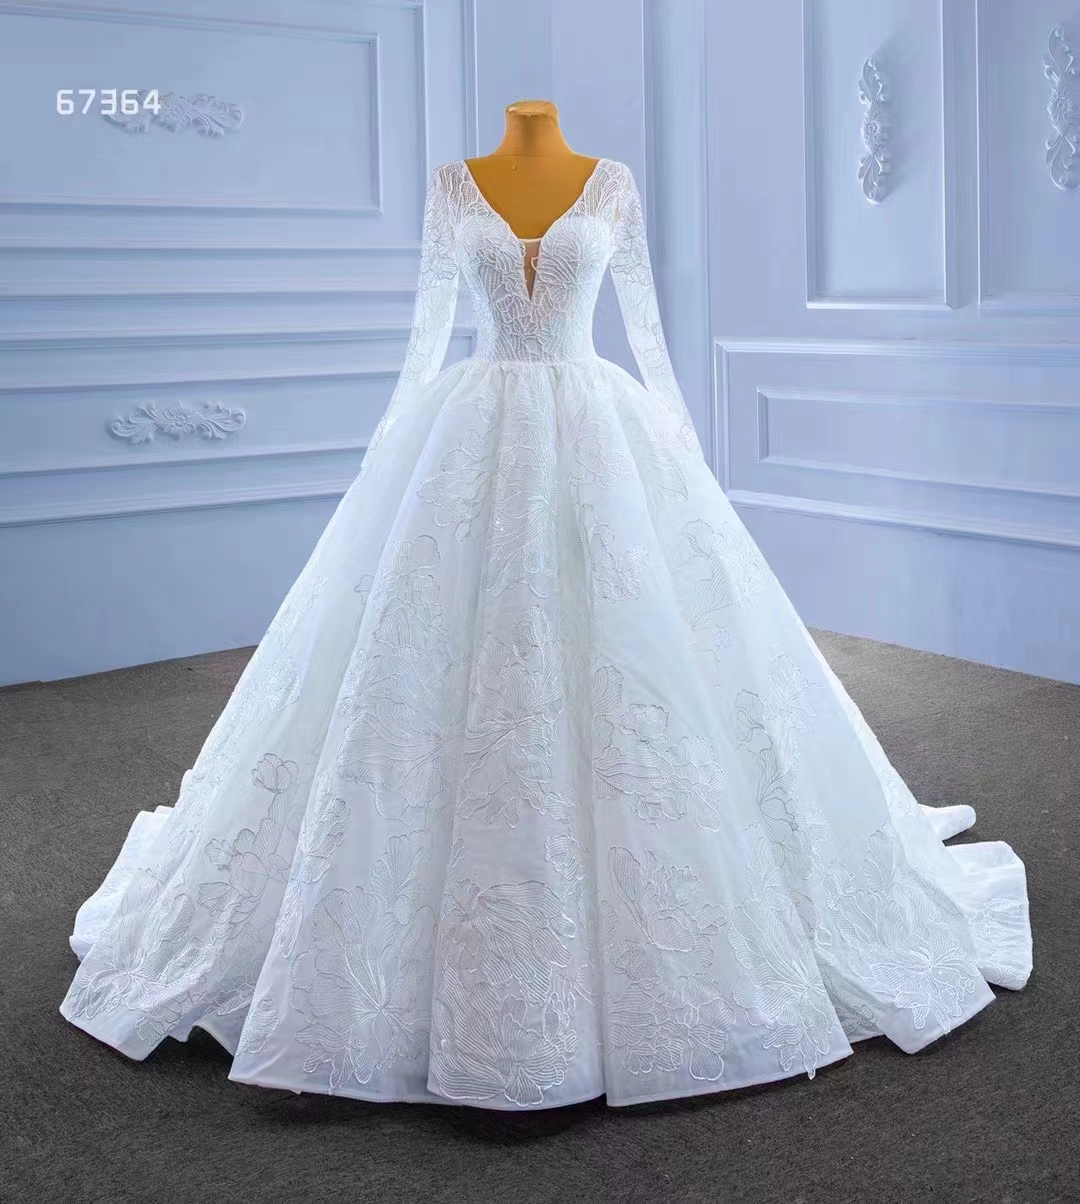 Длинное рукав белый тюль индейский свадебное платье элегантное свадебное платье SM67364